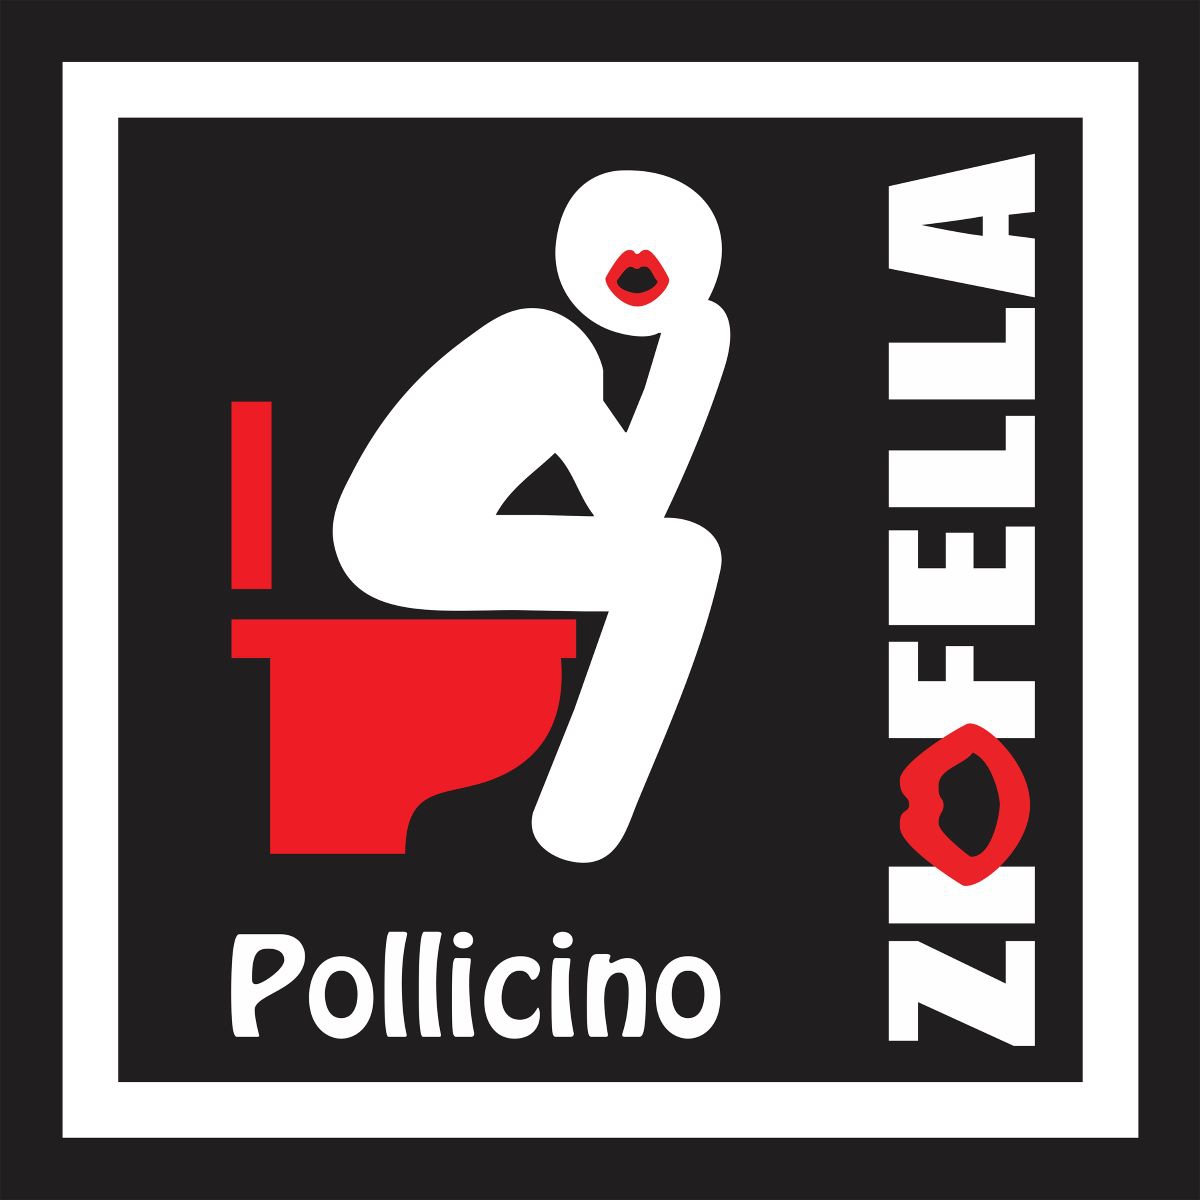 Zio Fella - “Pollicino”